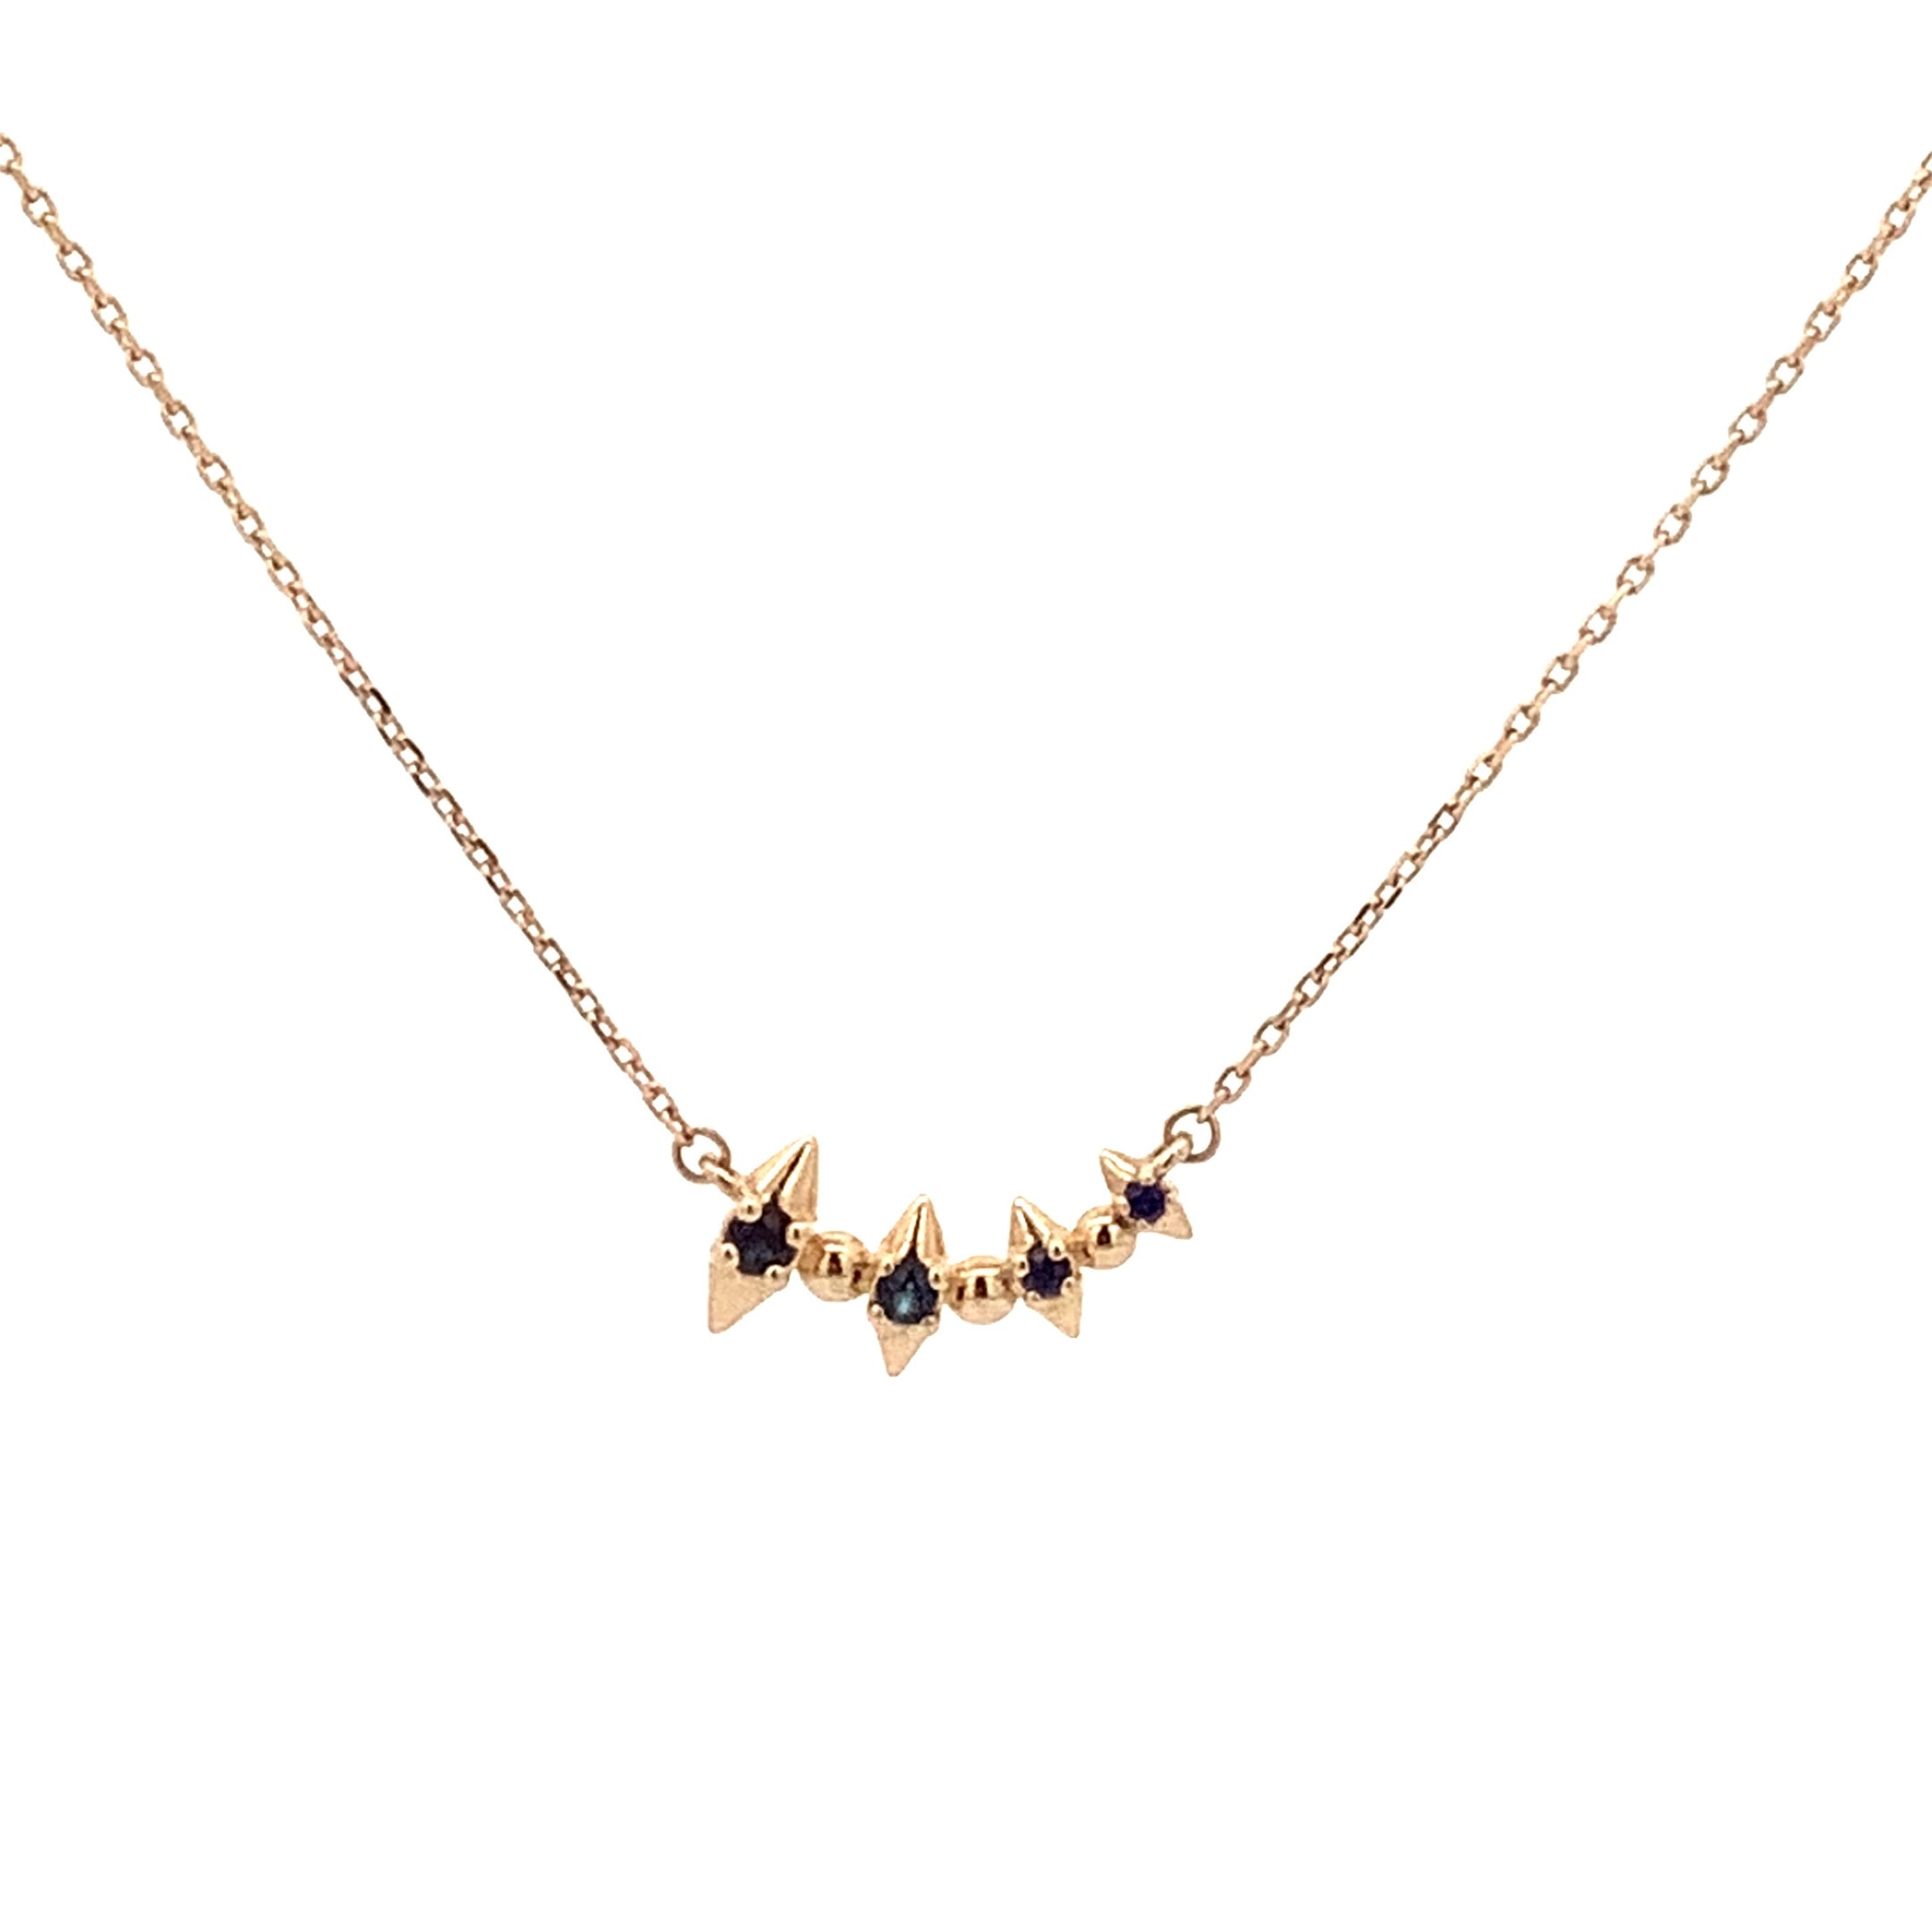 Einzigartige Saphir-Spitzen-Halskette von Adina Reyter - Y14